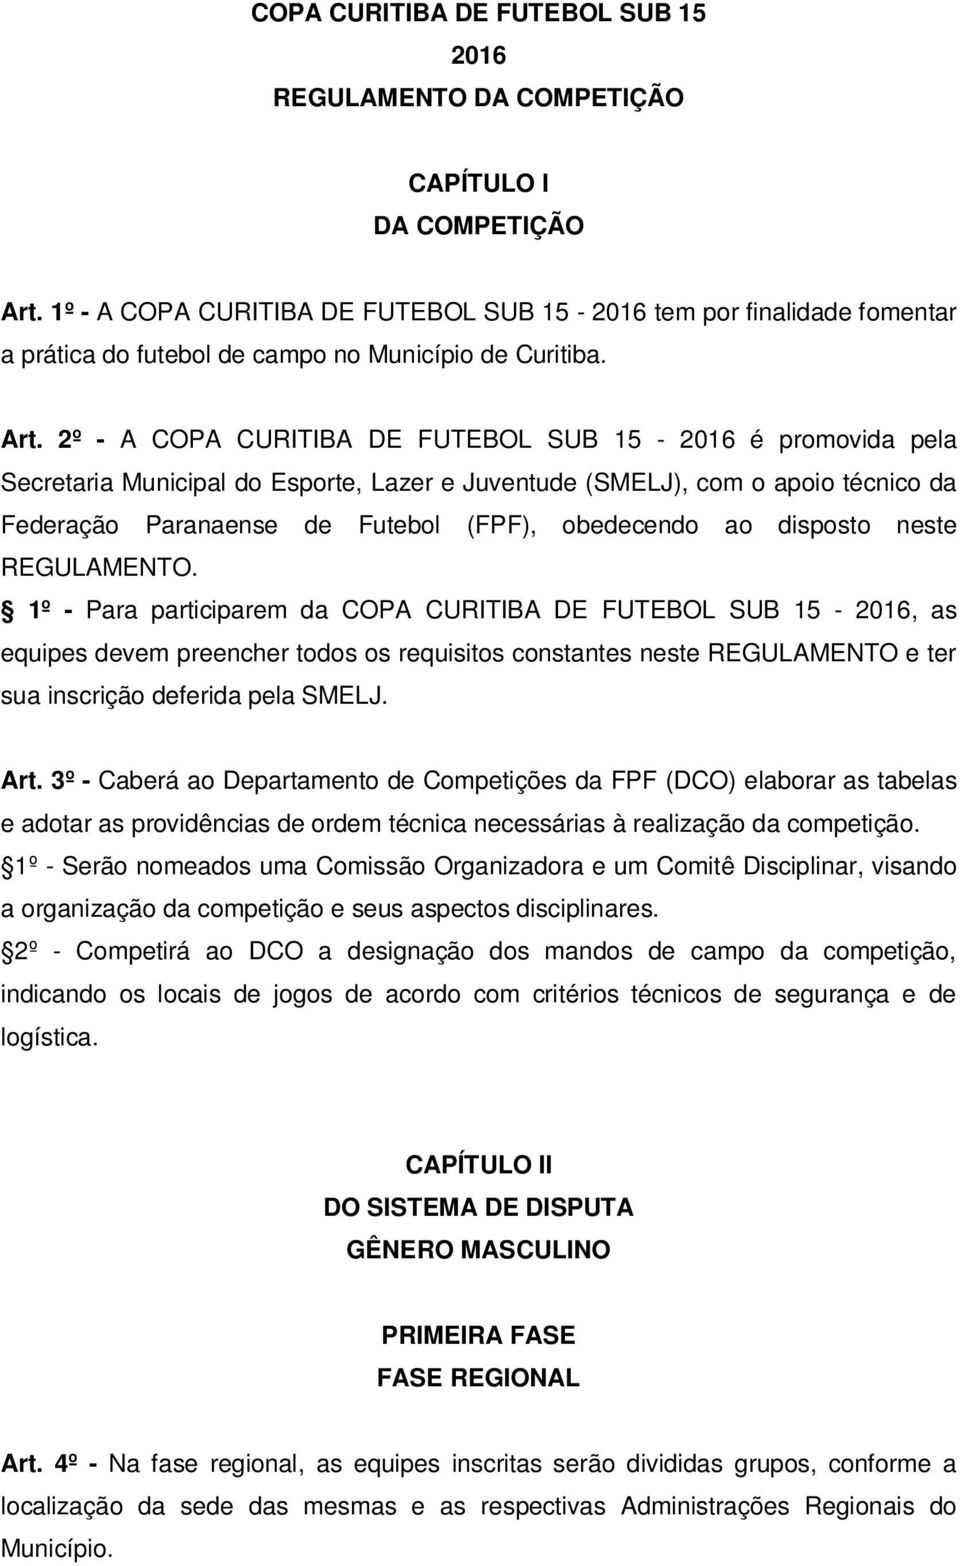 2º - A COPA CURITIBA DE FUTEBOL SUB 15-2016 é promovida pela Secretaria Municipal do Esporte, Lazer e Juventude (SMELJ), com o apoio técnico da Federação Paranaense de Futebol (FPF), obedecendo ao